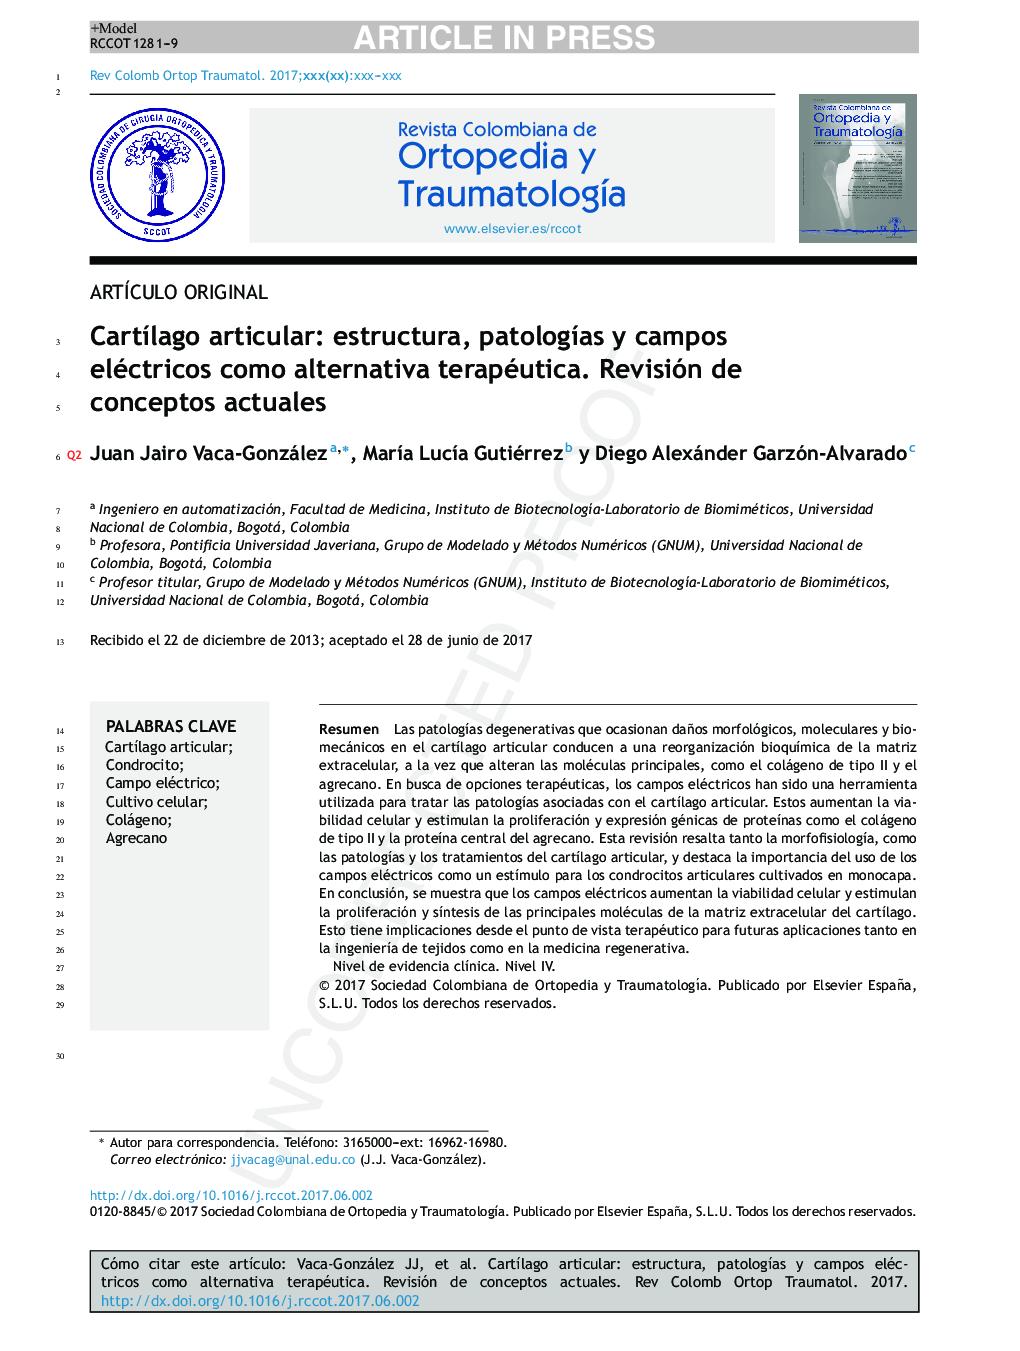 CartÃ­lago articular: estructura, patologÃ­as y campos eléctricos como alternativa terapéutica. Revisión de conceptos actuales